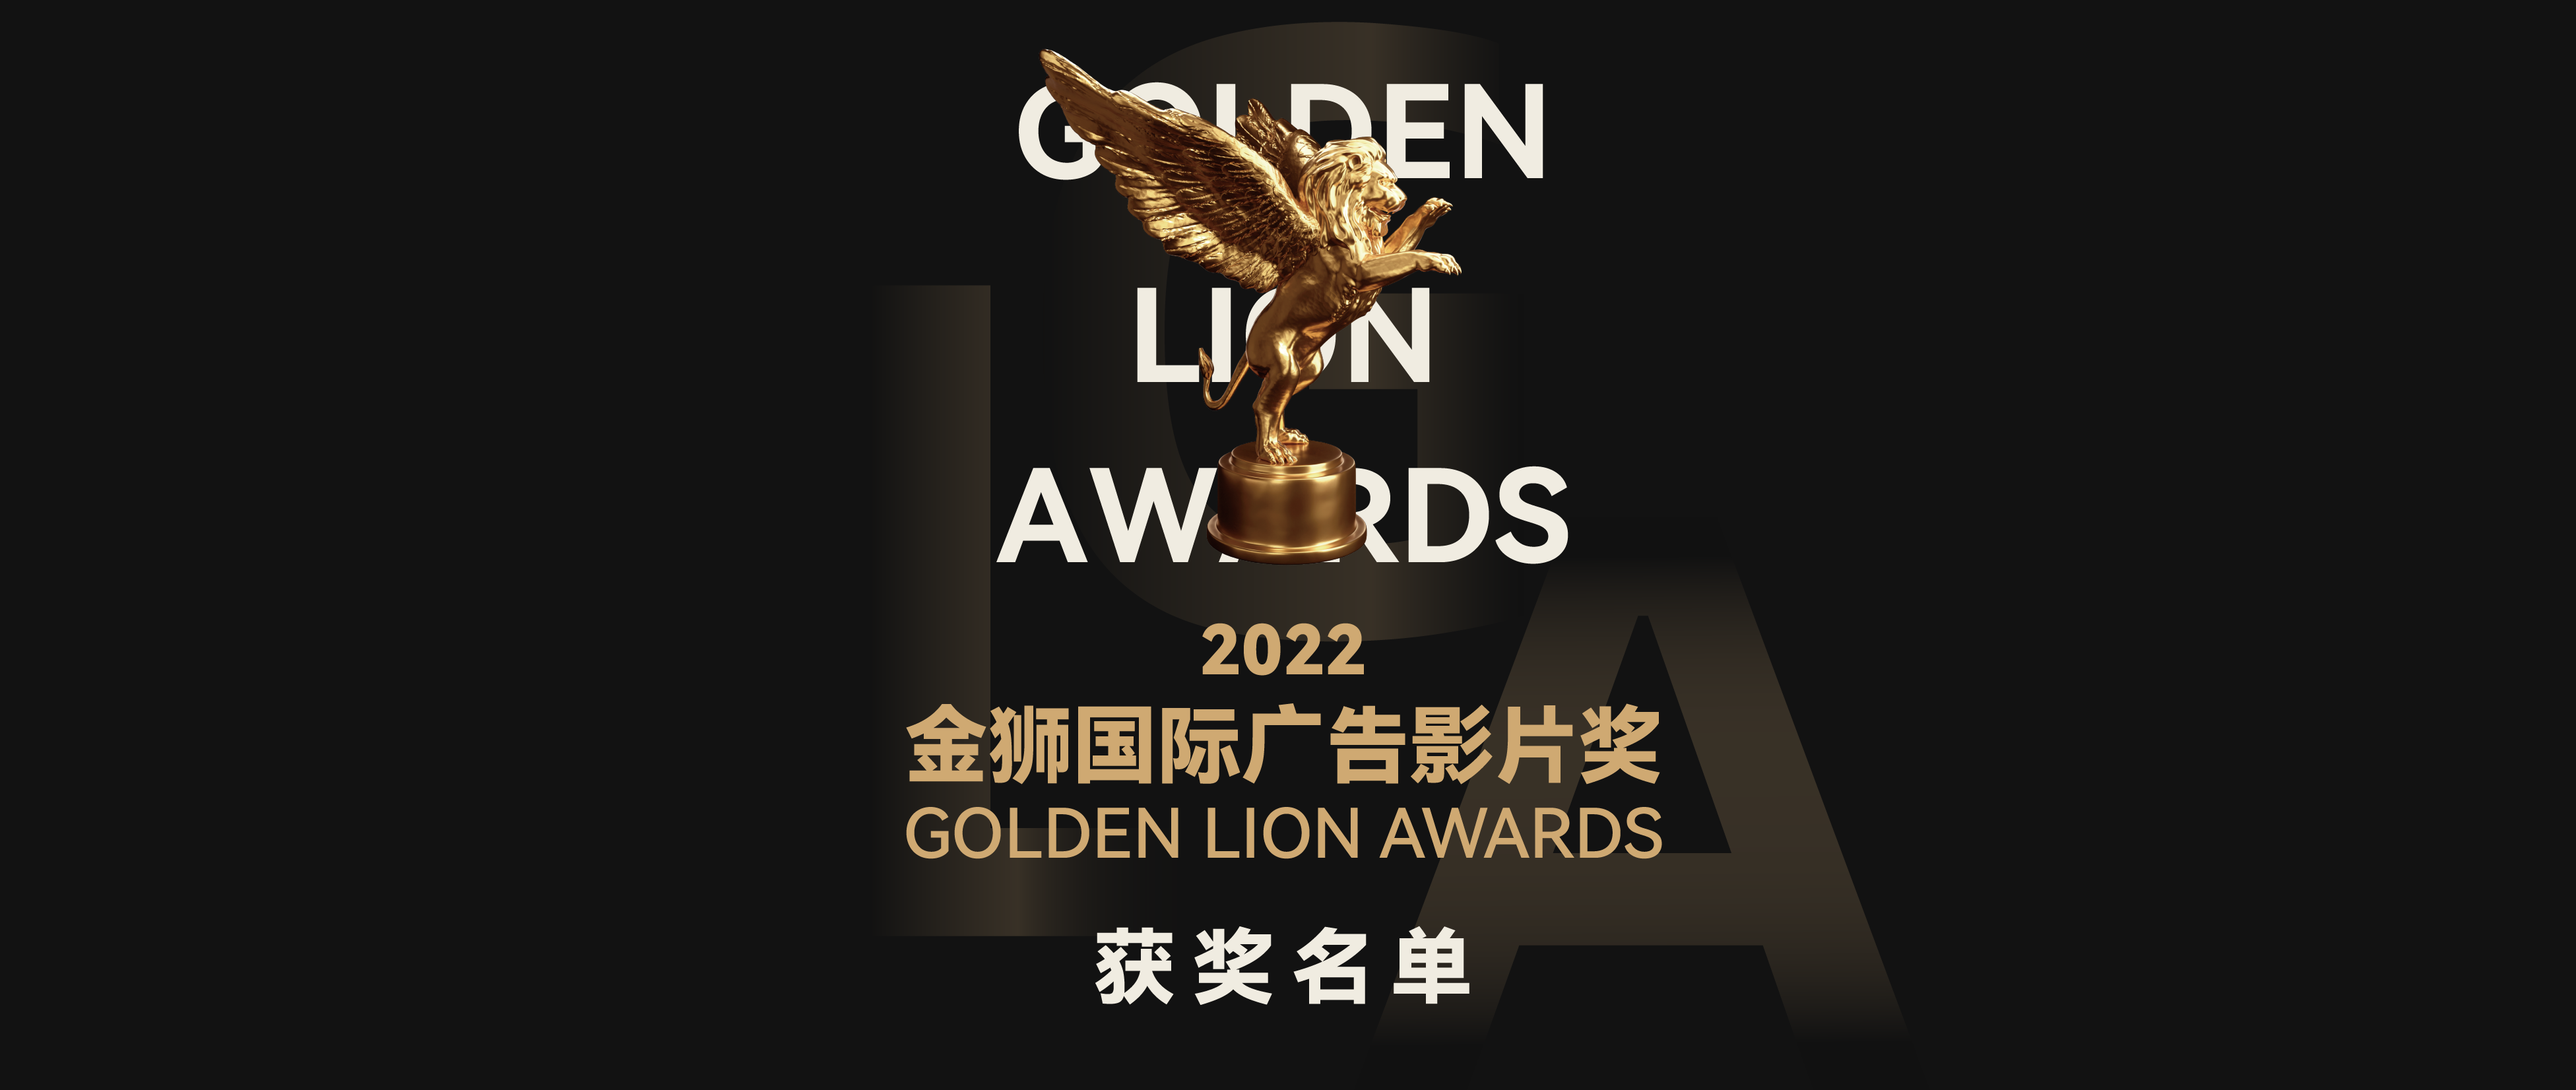 重磅揭晓丨2022金狮国际广告影片奖获奖名单完整版